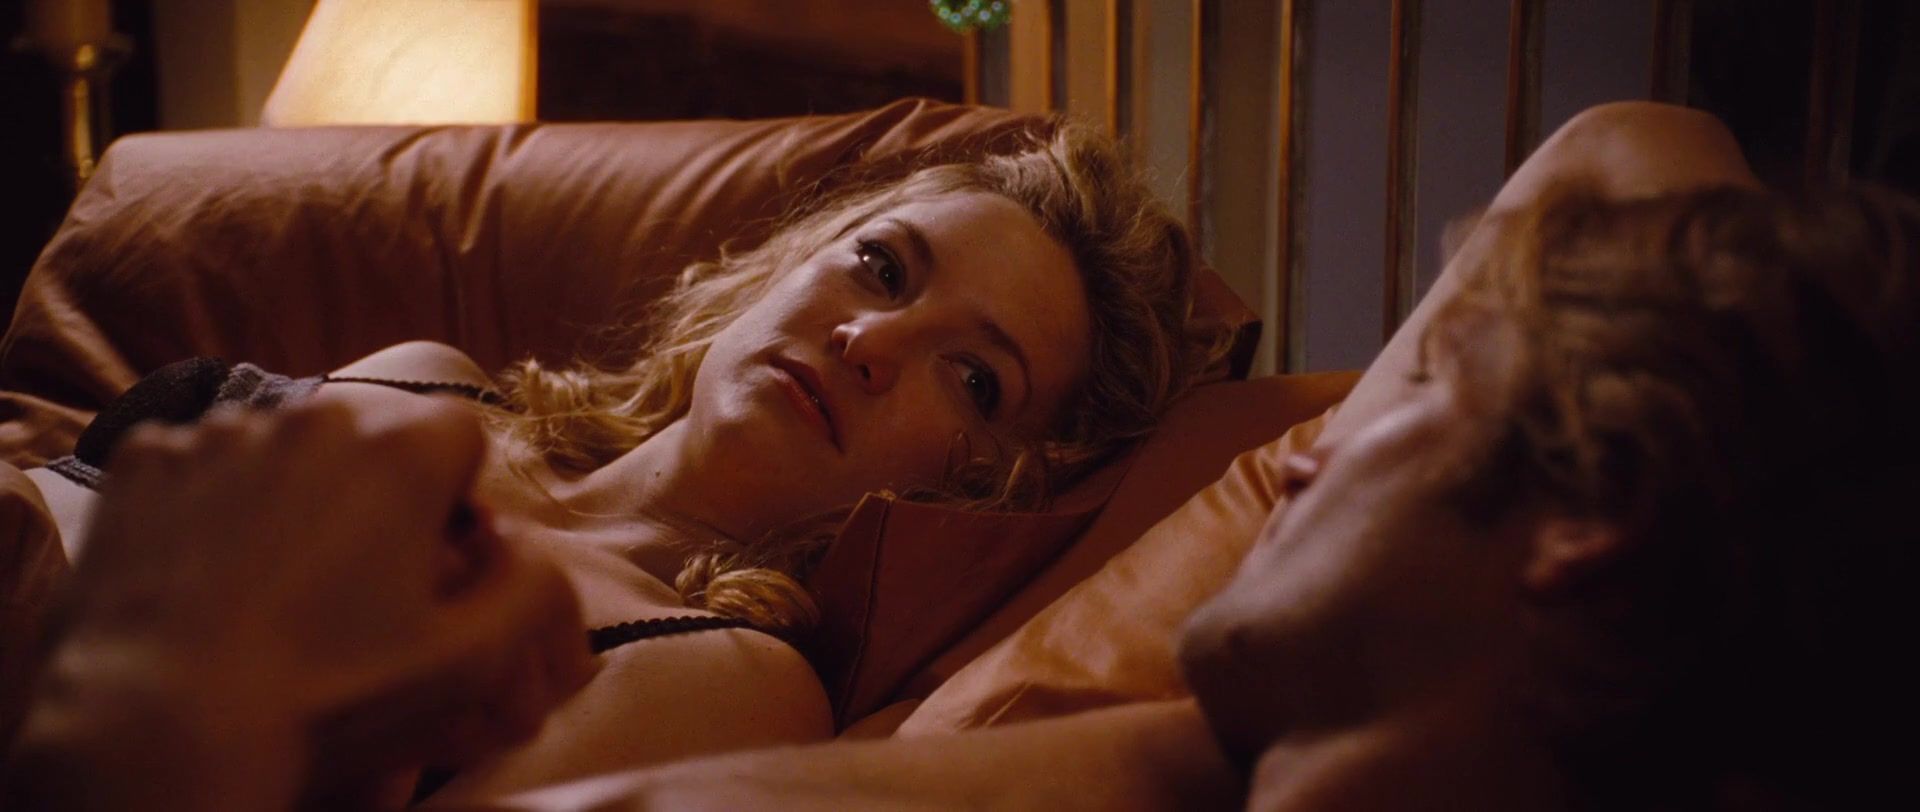 ucam Sex video Kate Hudson - A Little Bit of Heaven (2012) Les